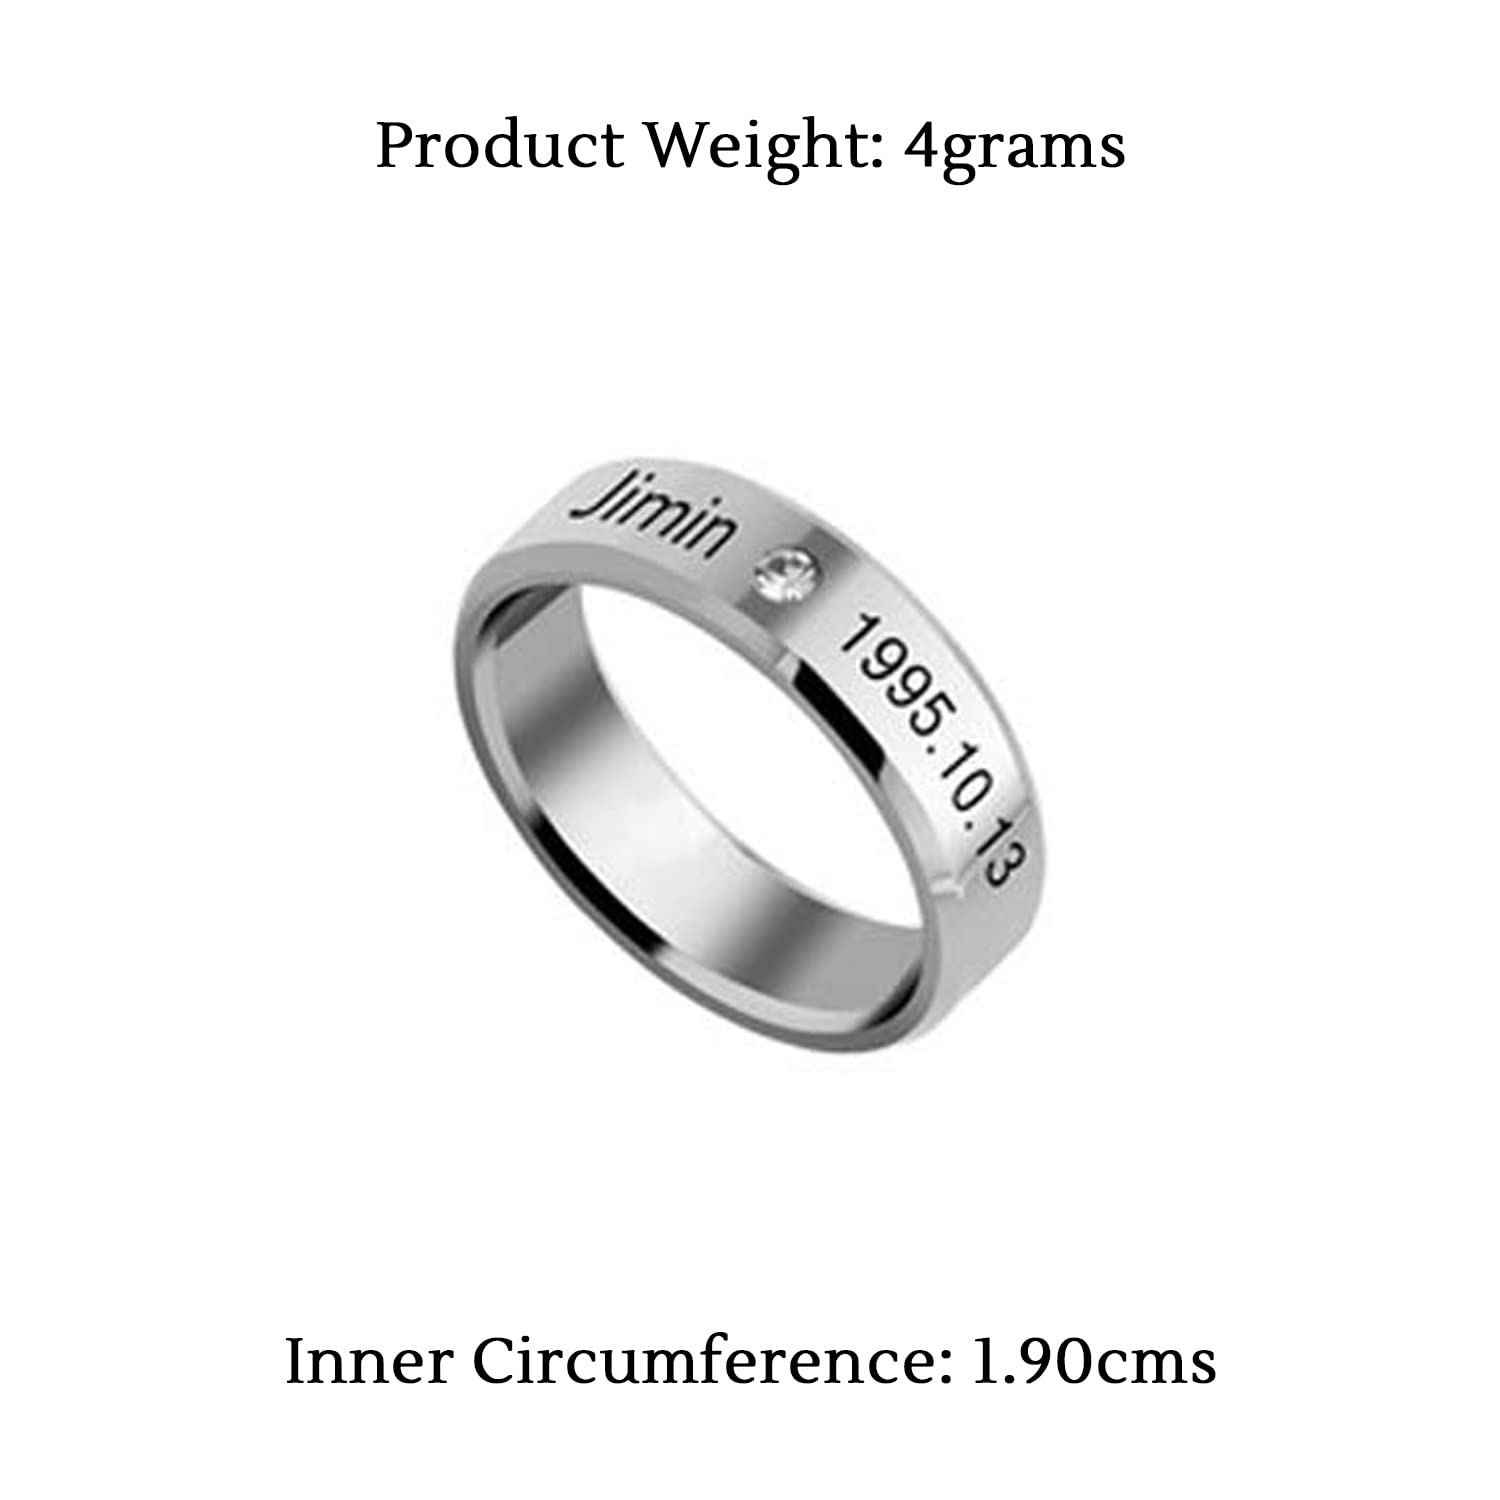 Varieties Square Geometric Metal Stainless Steel Ring for Men/Boys/Biker ( Silver)